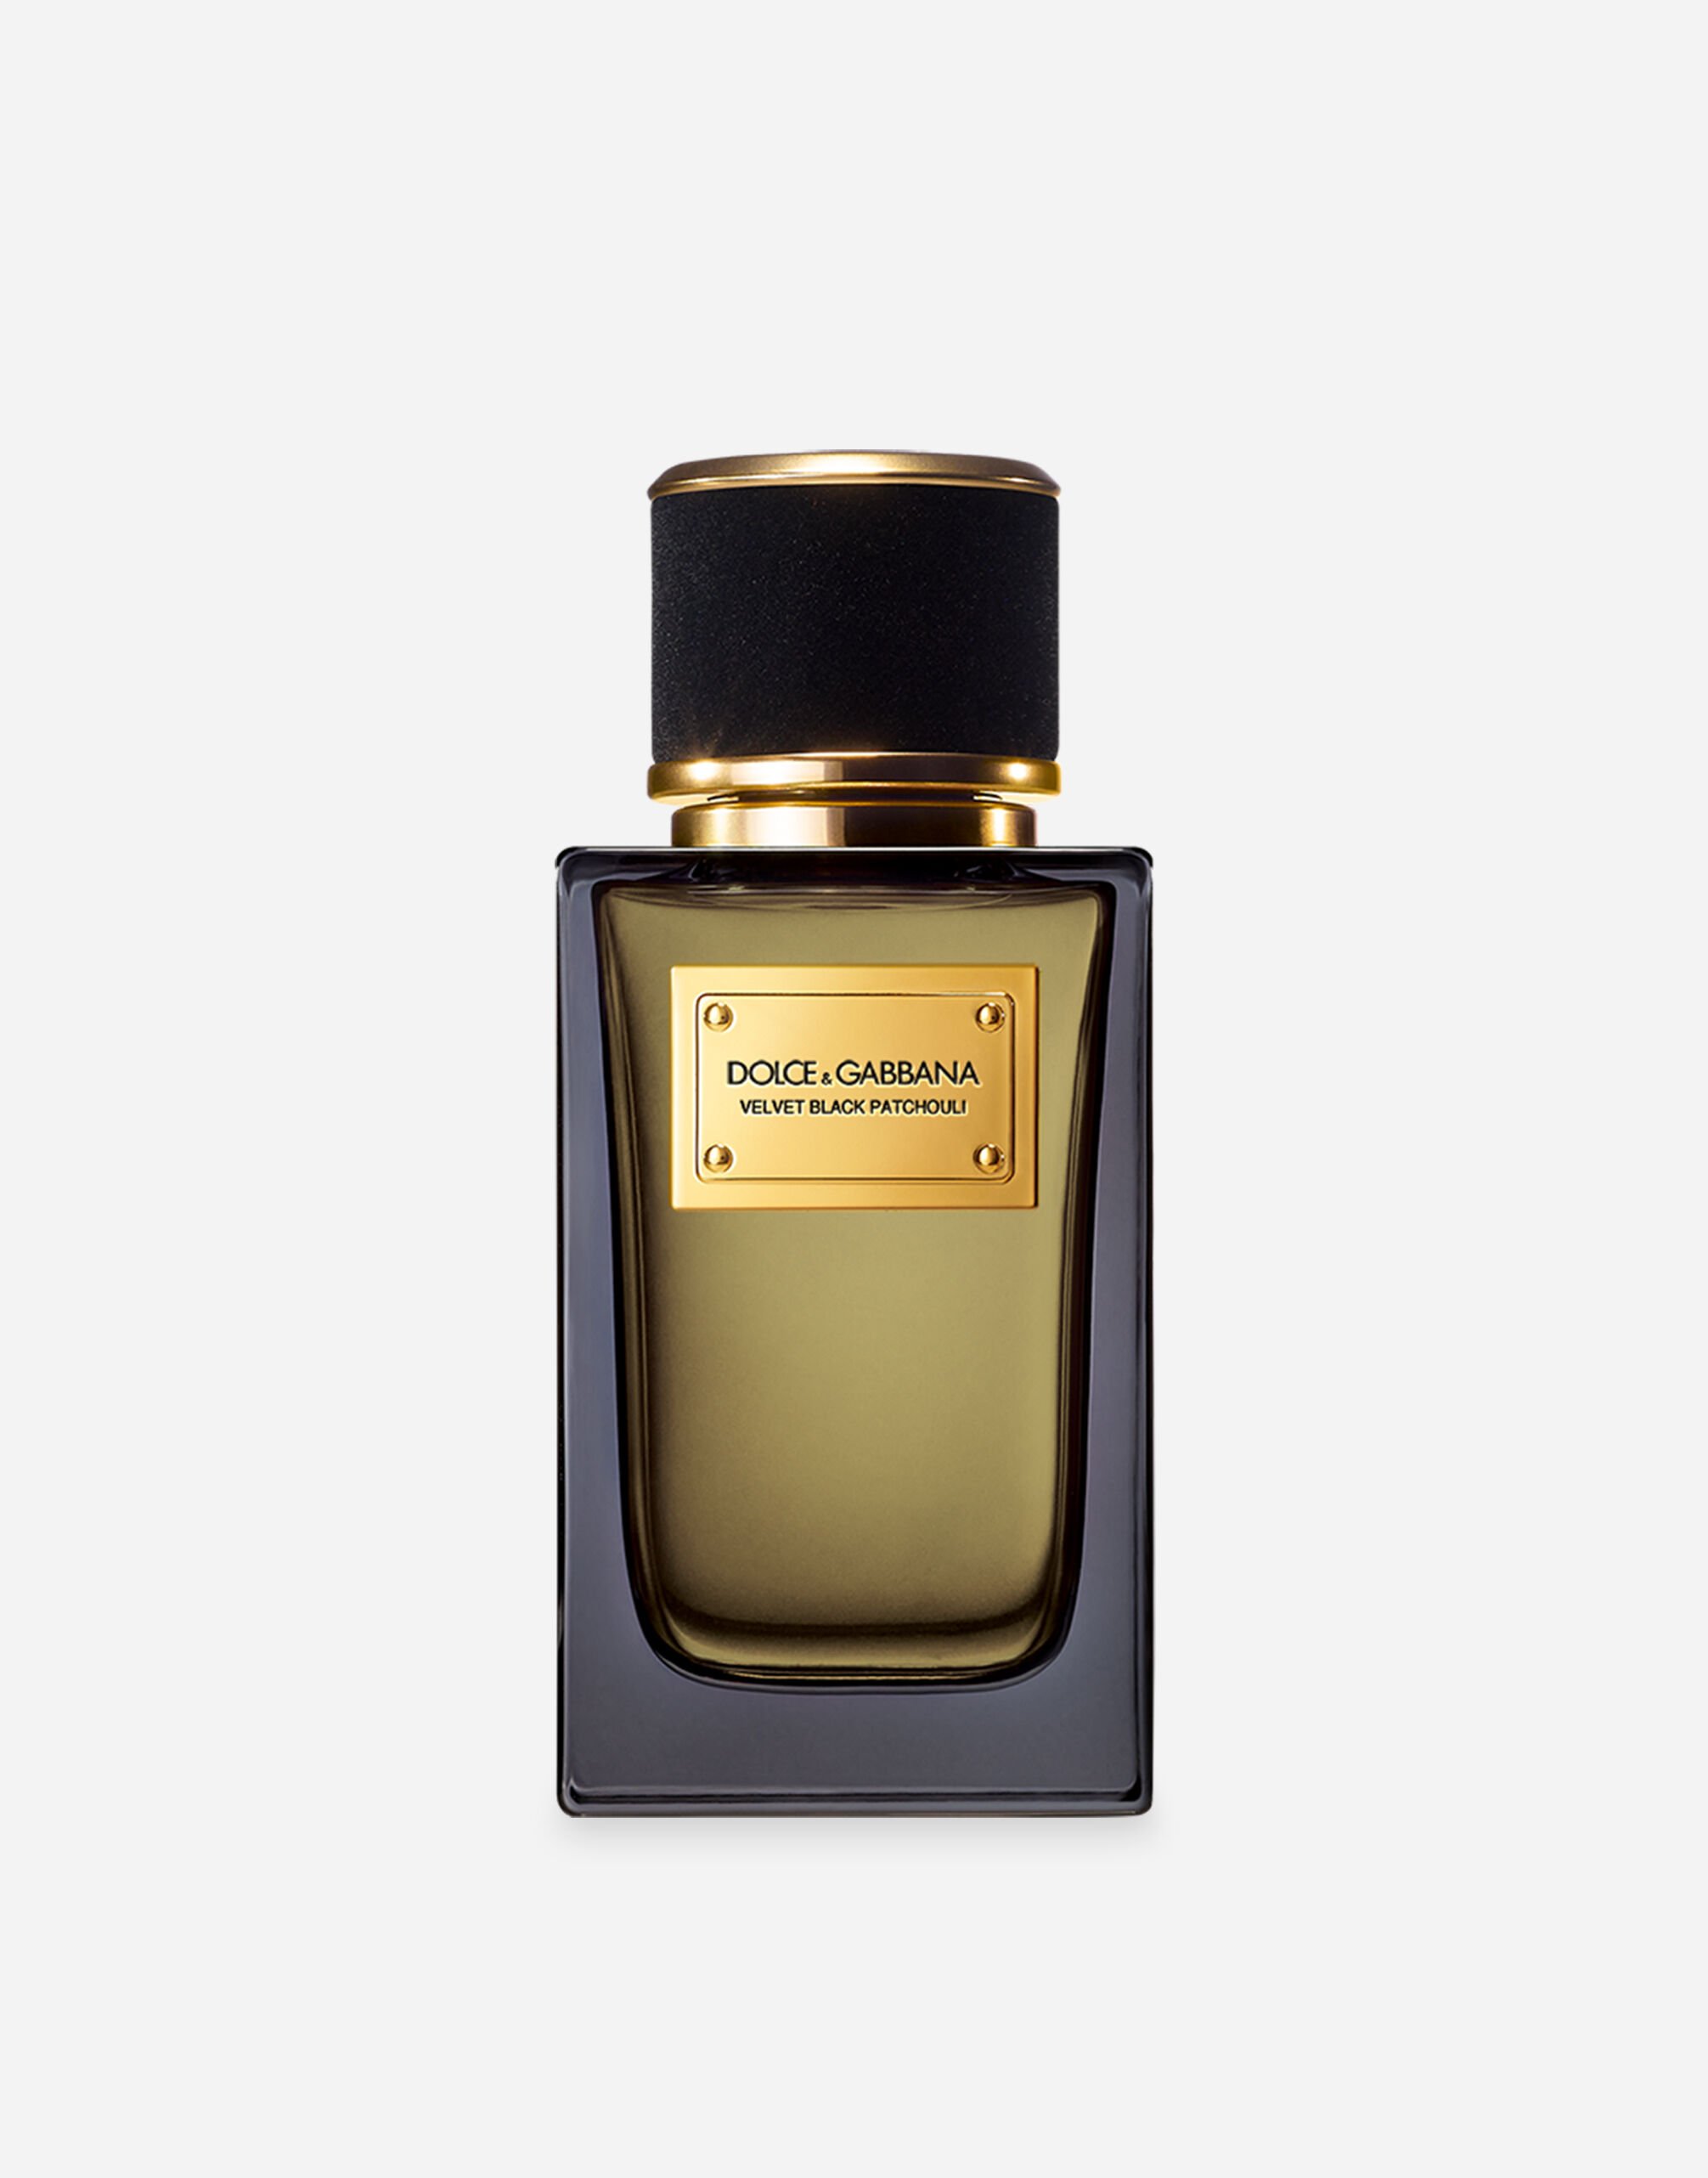 Dolce & Gabbana Velvet Black Patchouli Eau de Parfum - VP002BVP000